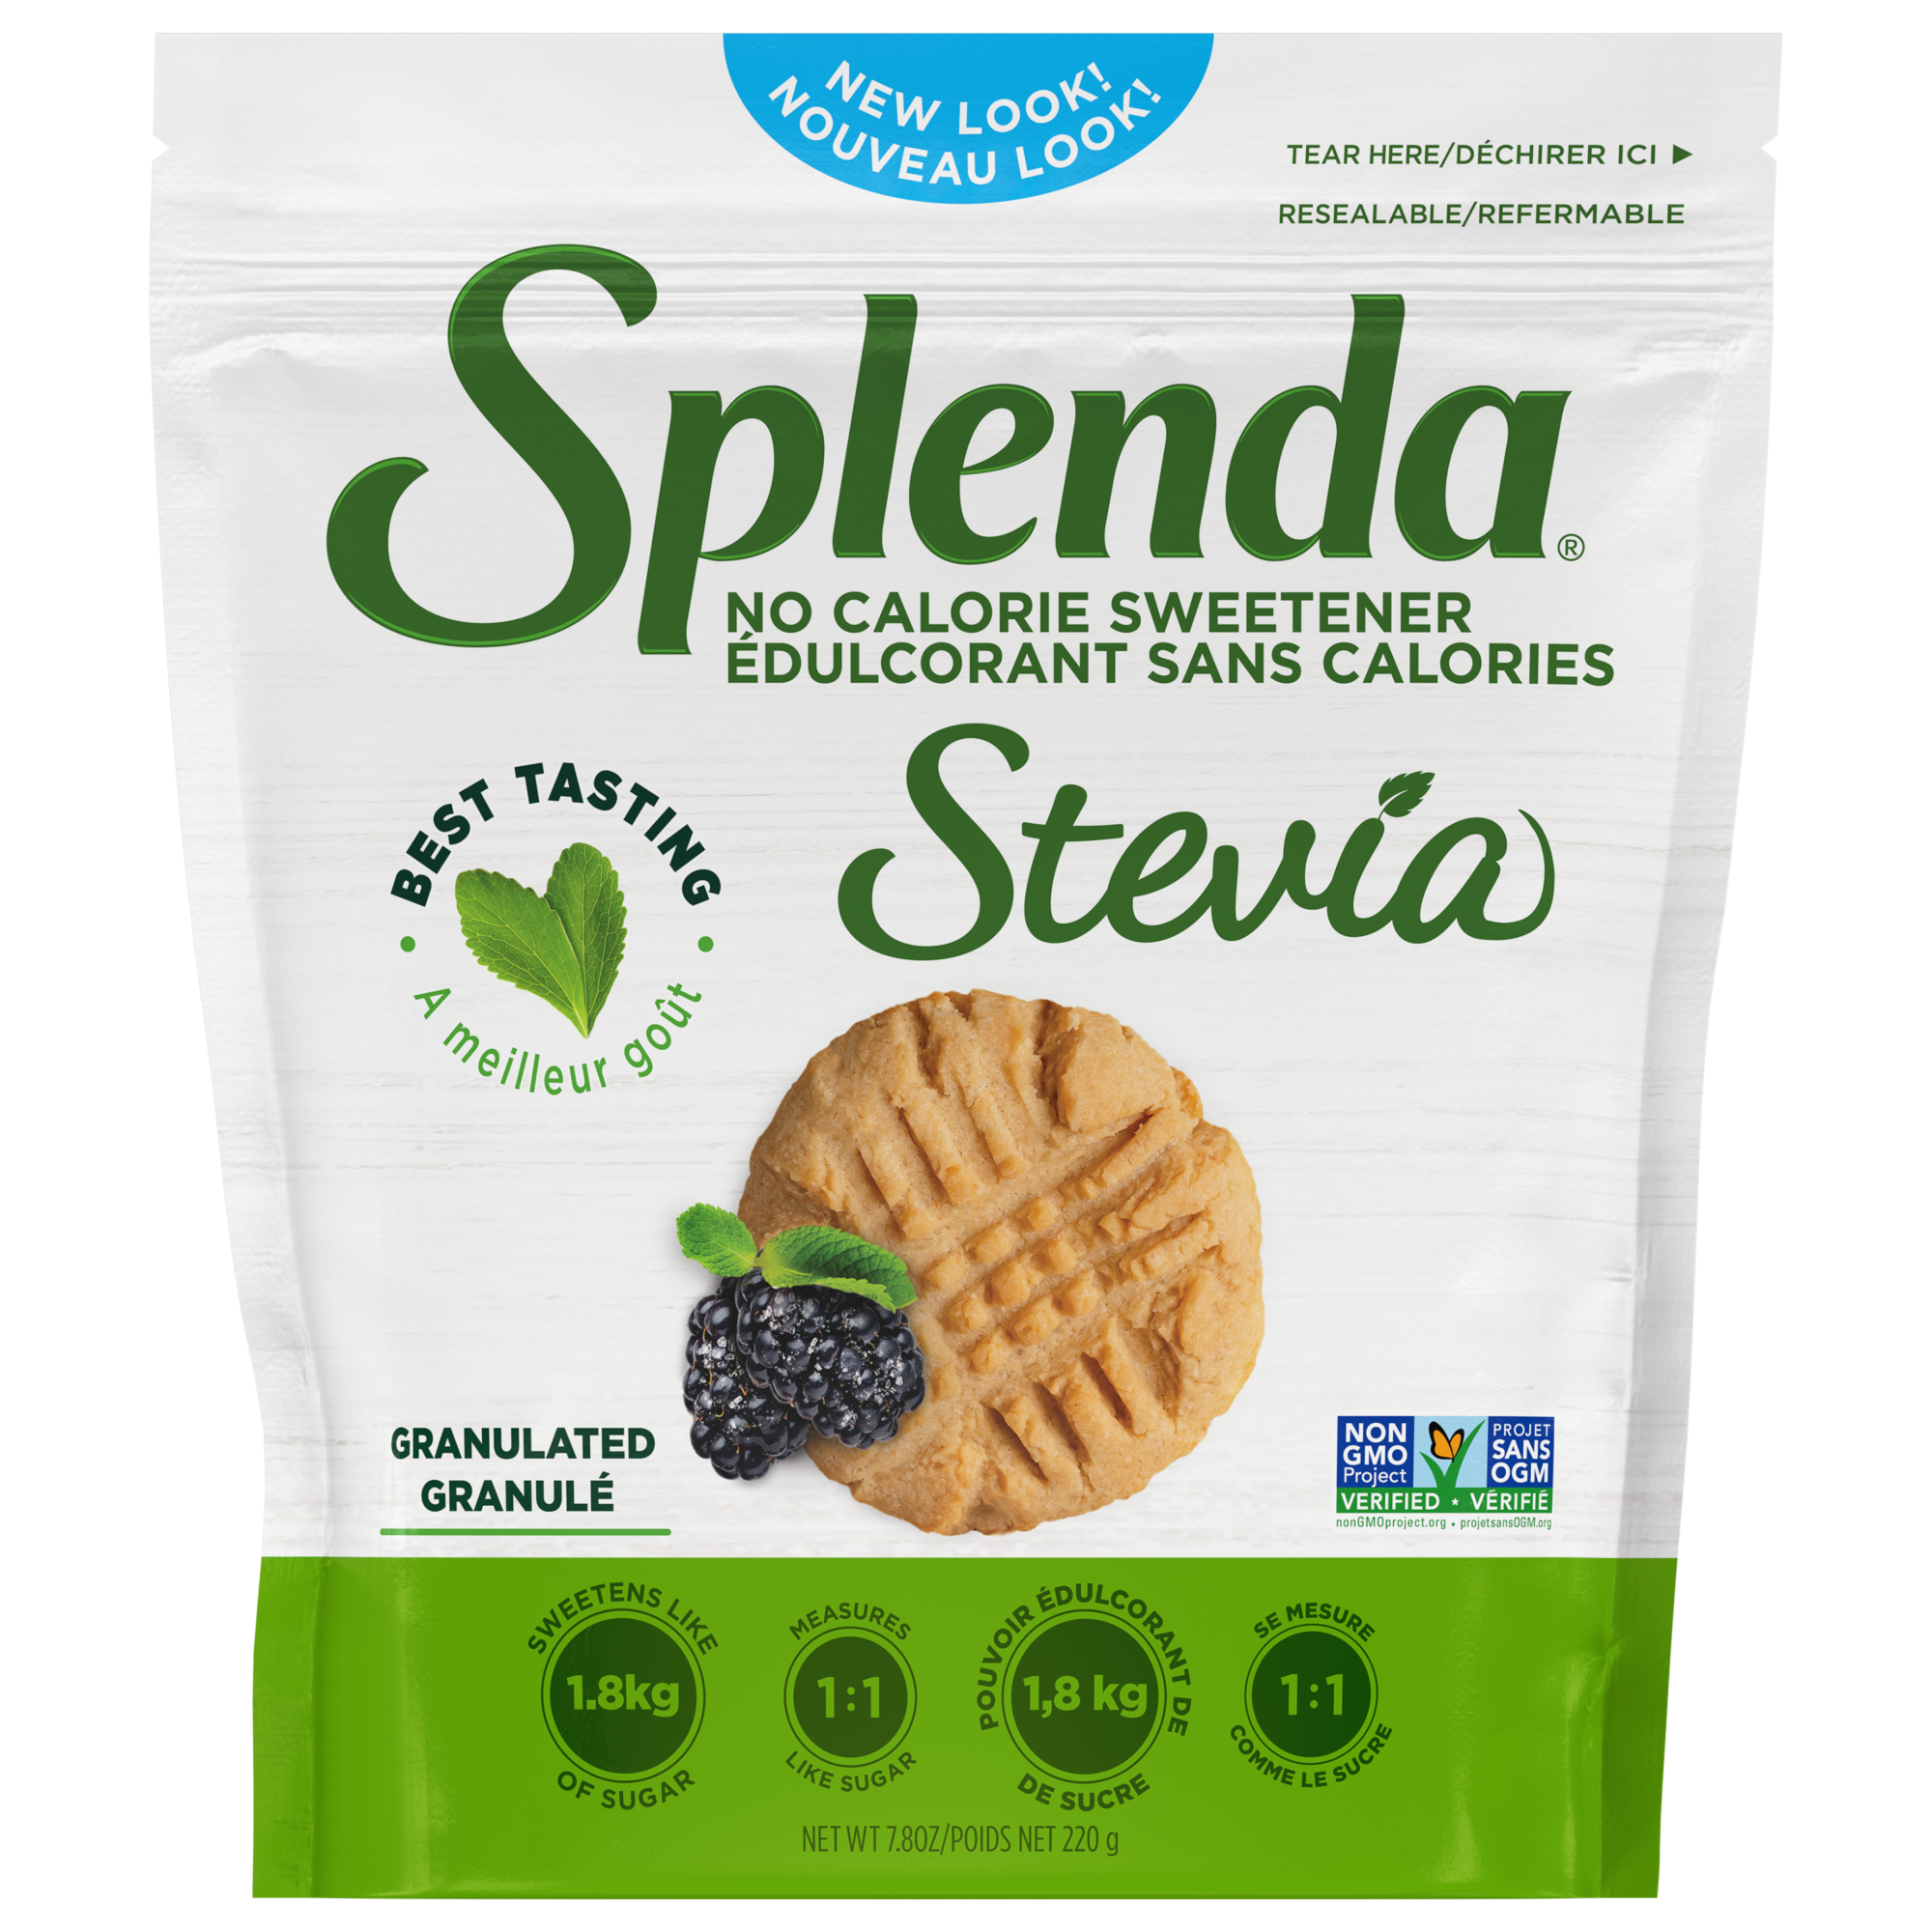 Splenda Stevia Granulated Pouch - Front